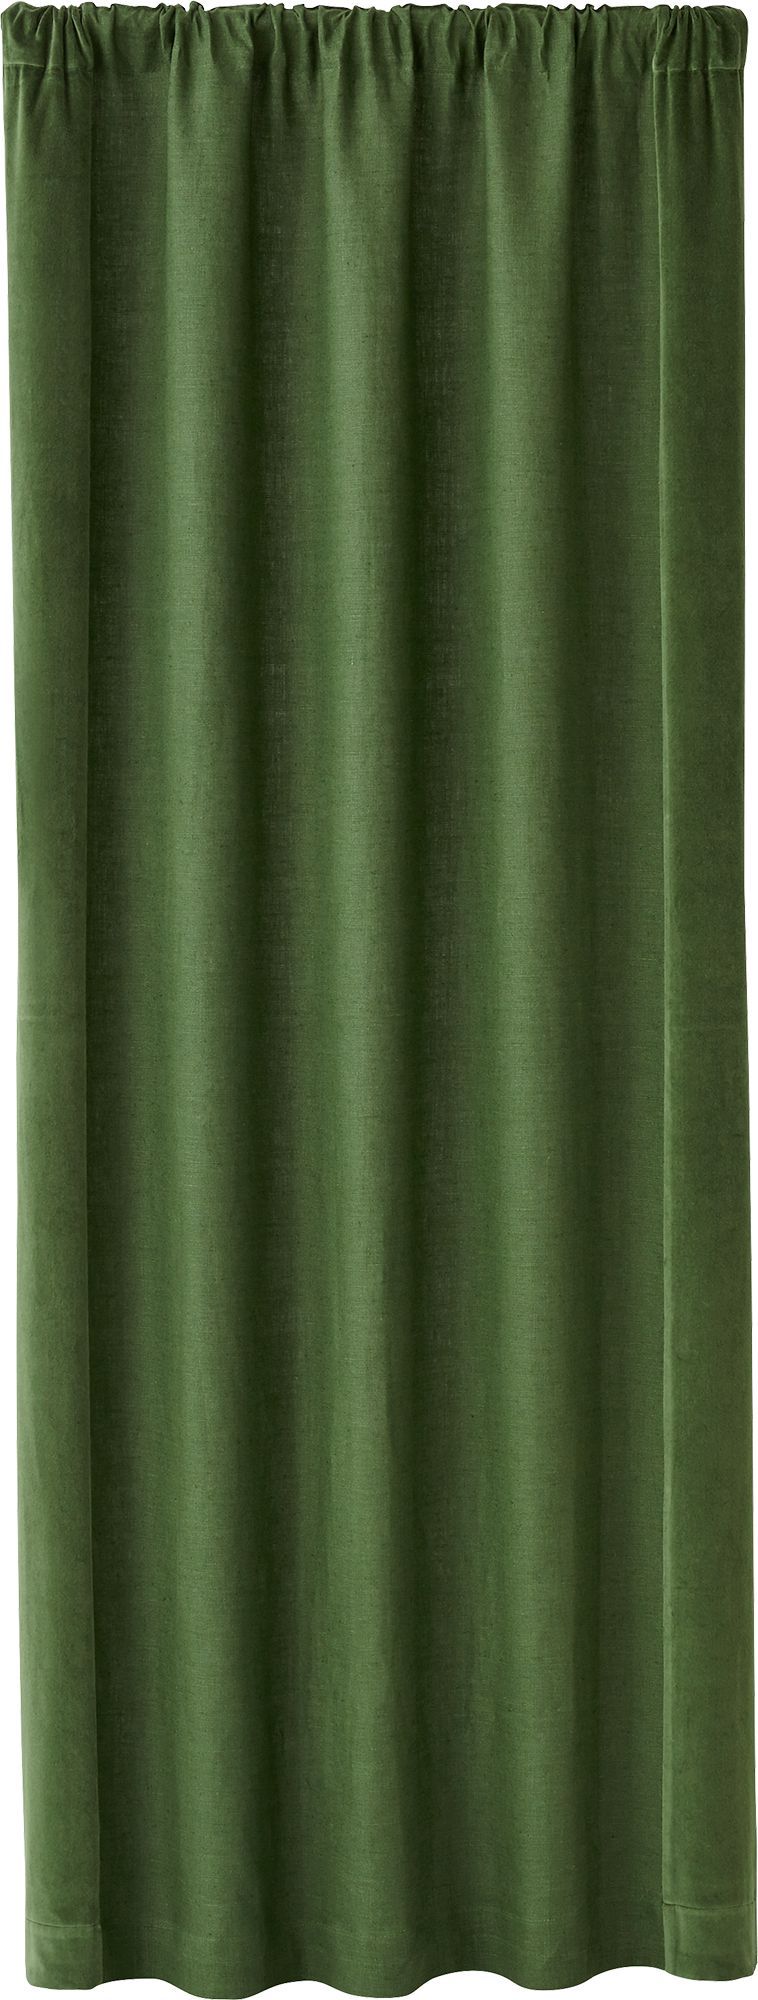 Ezria Green Linen Curtain Panel 48"x96" + Reviews | Crate and Barrel | Crate & Barrel